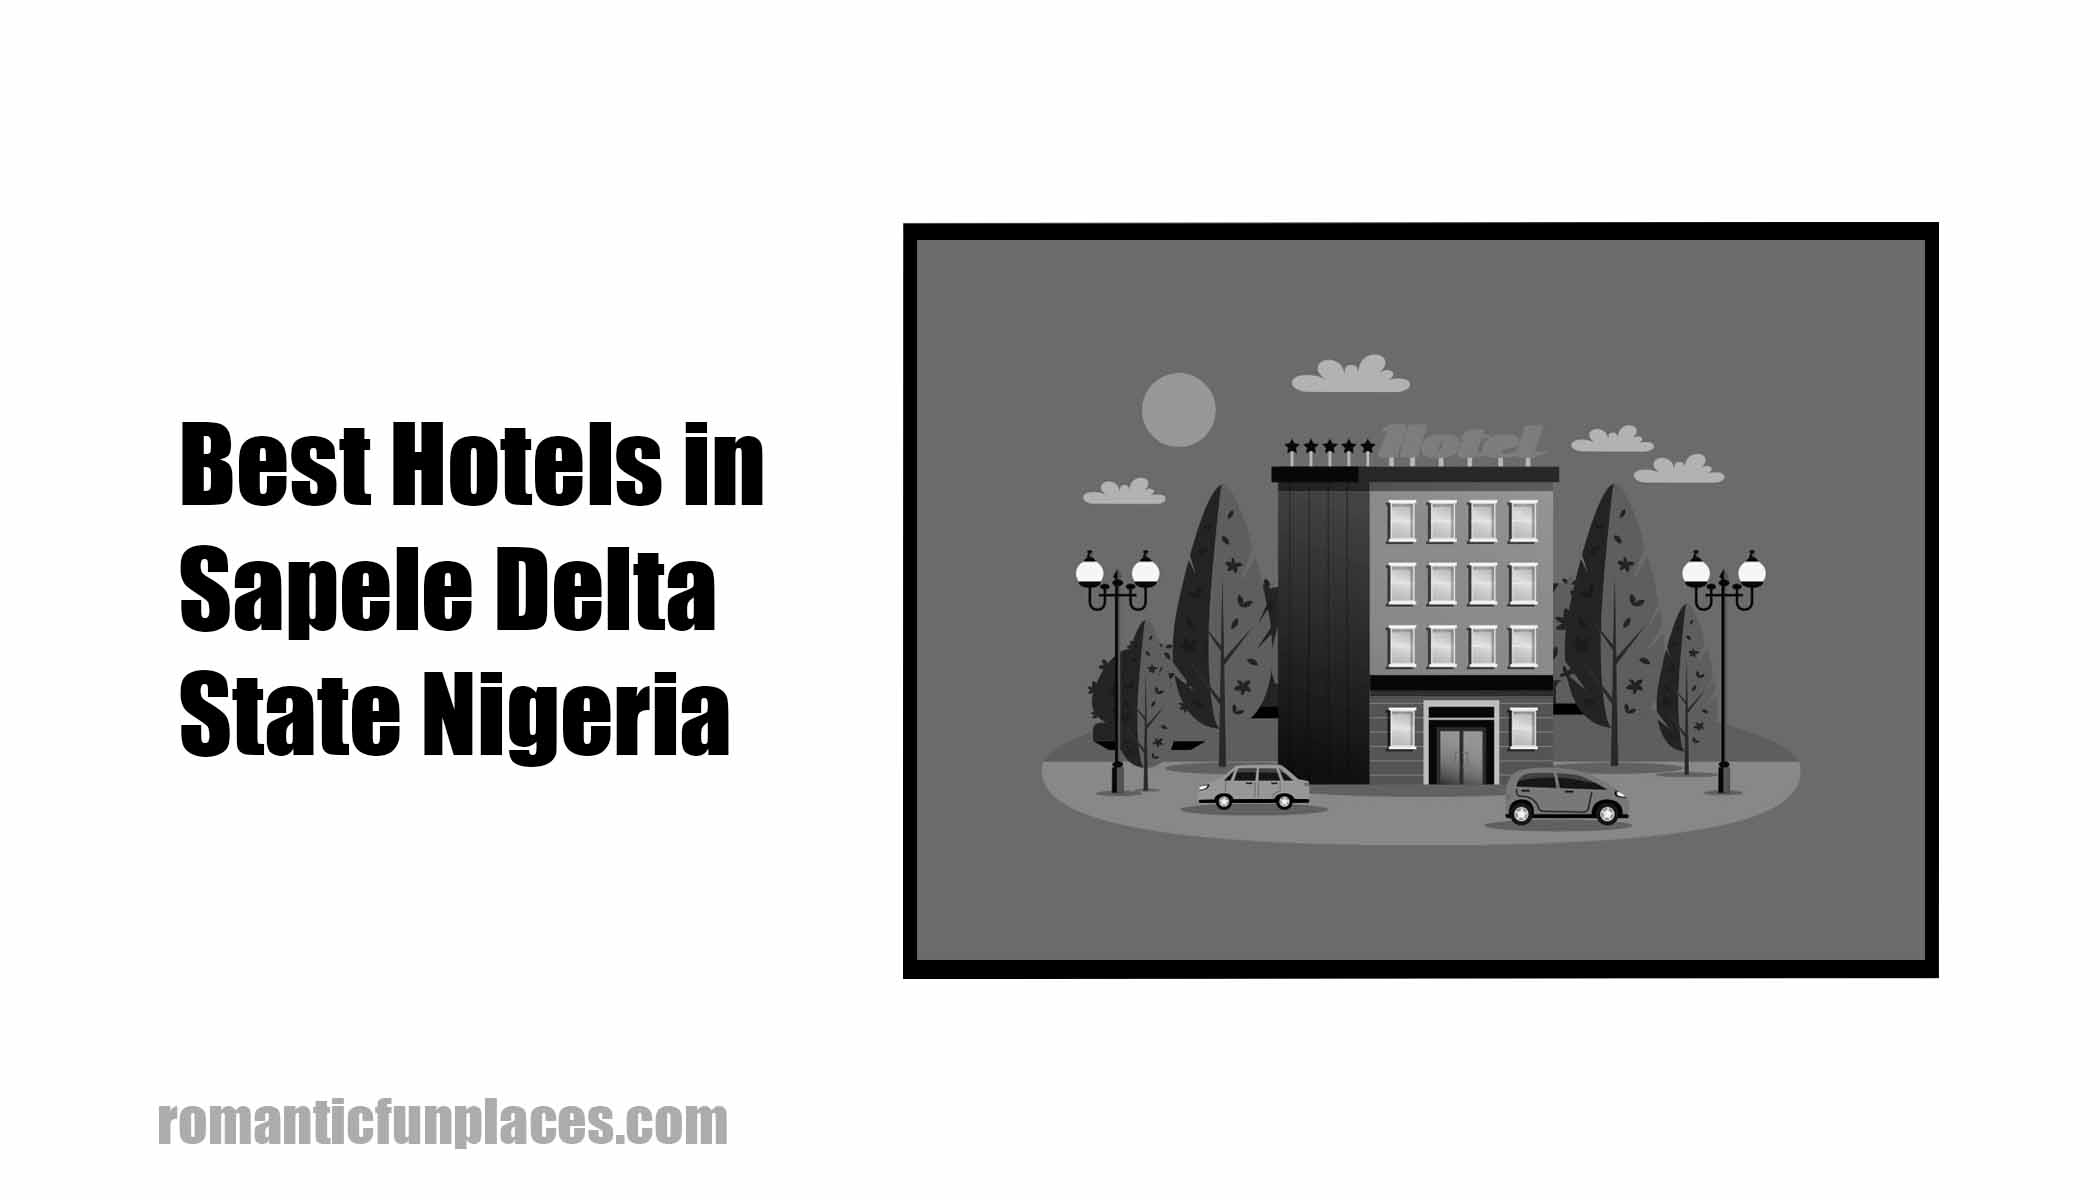 Best Hotels in Sapele Delta State Nigeria